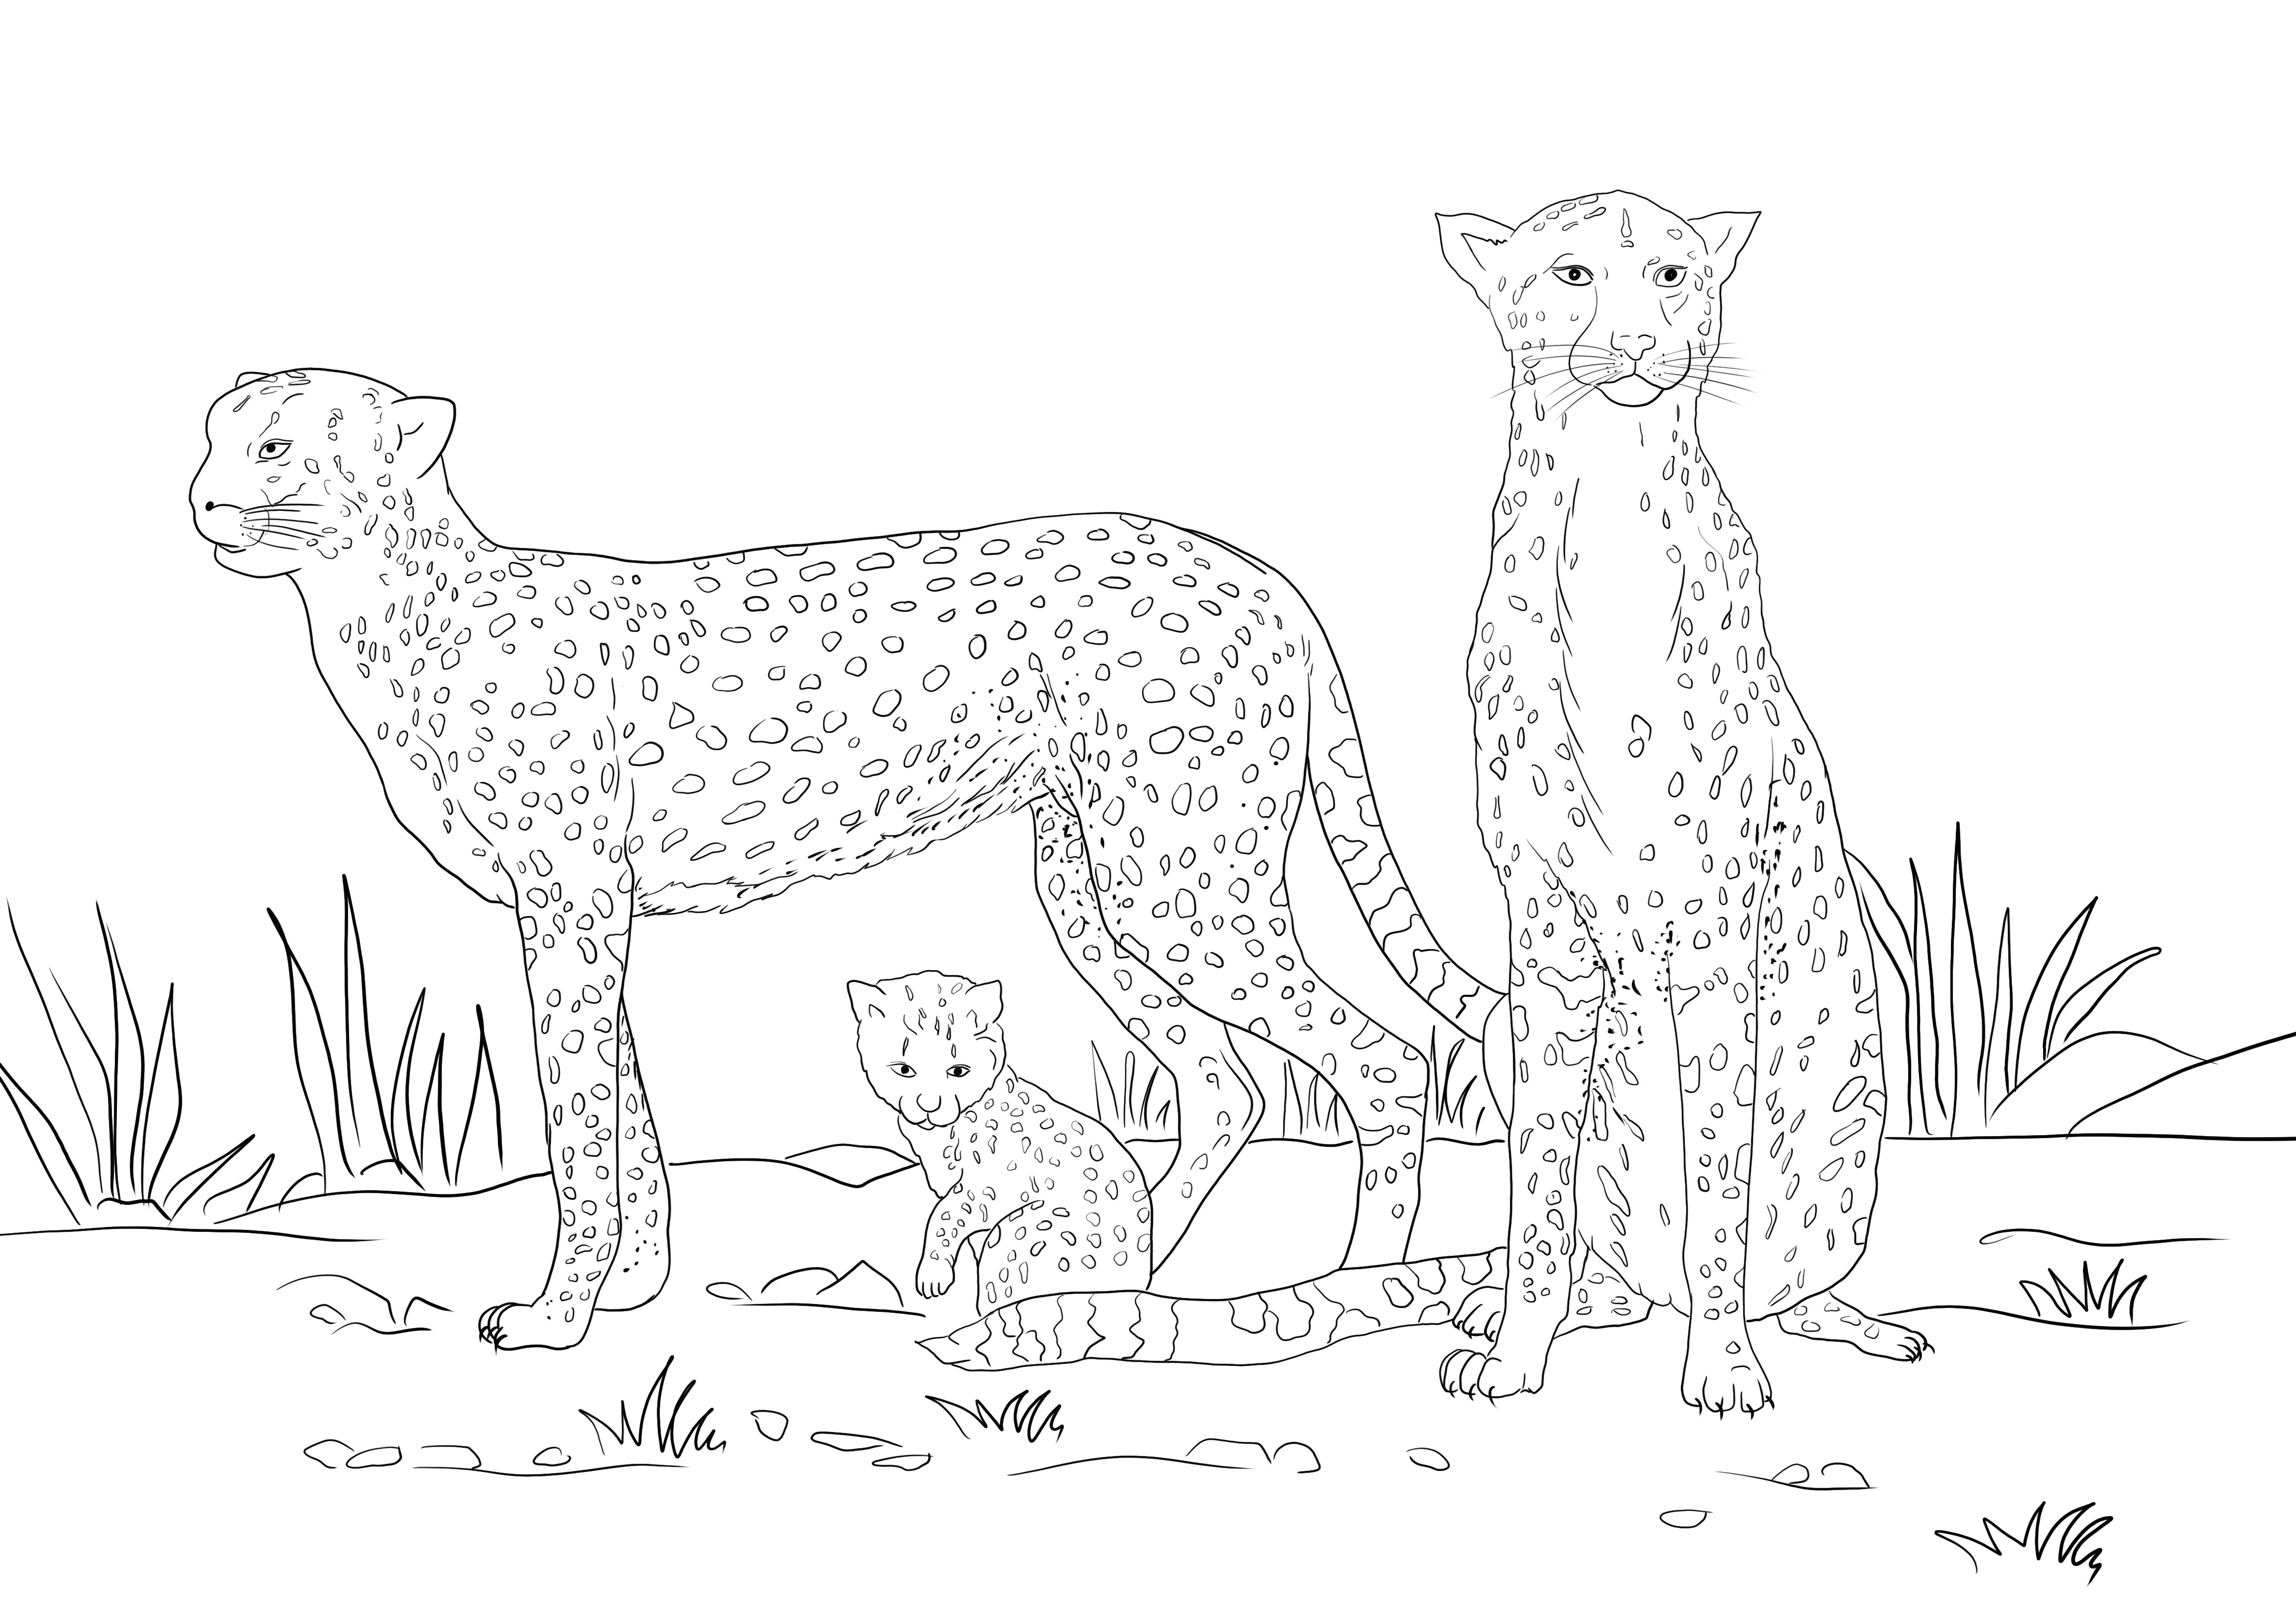 Ecco una risorsa gratuita di immagini da colorare di una famiglia di ghepardi da stampare gratuitamente